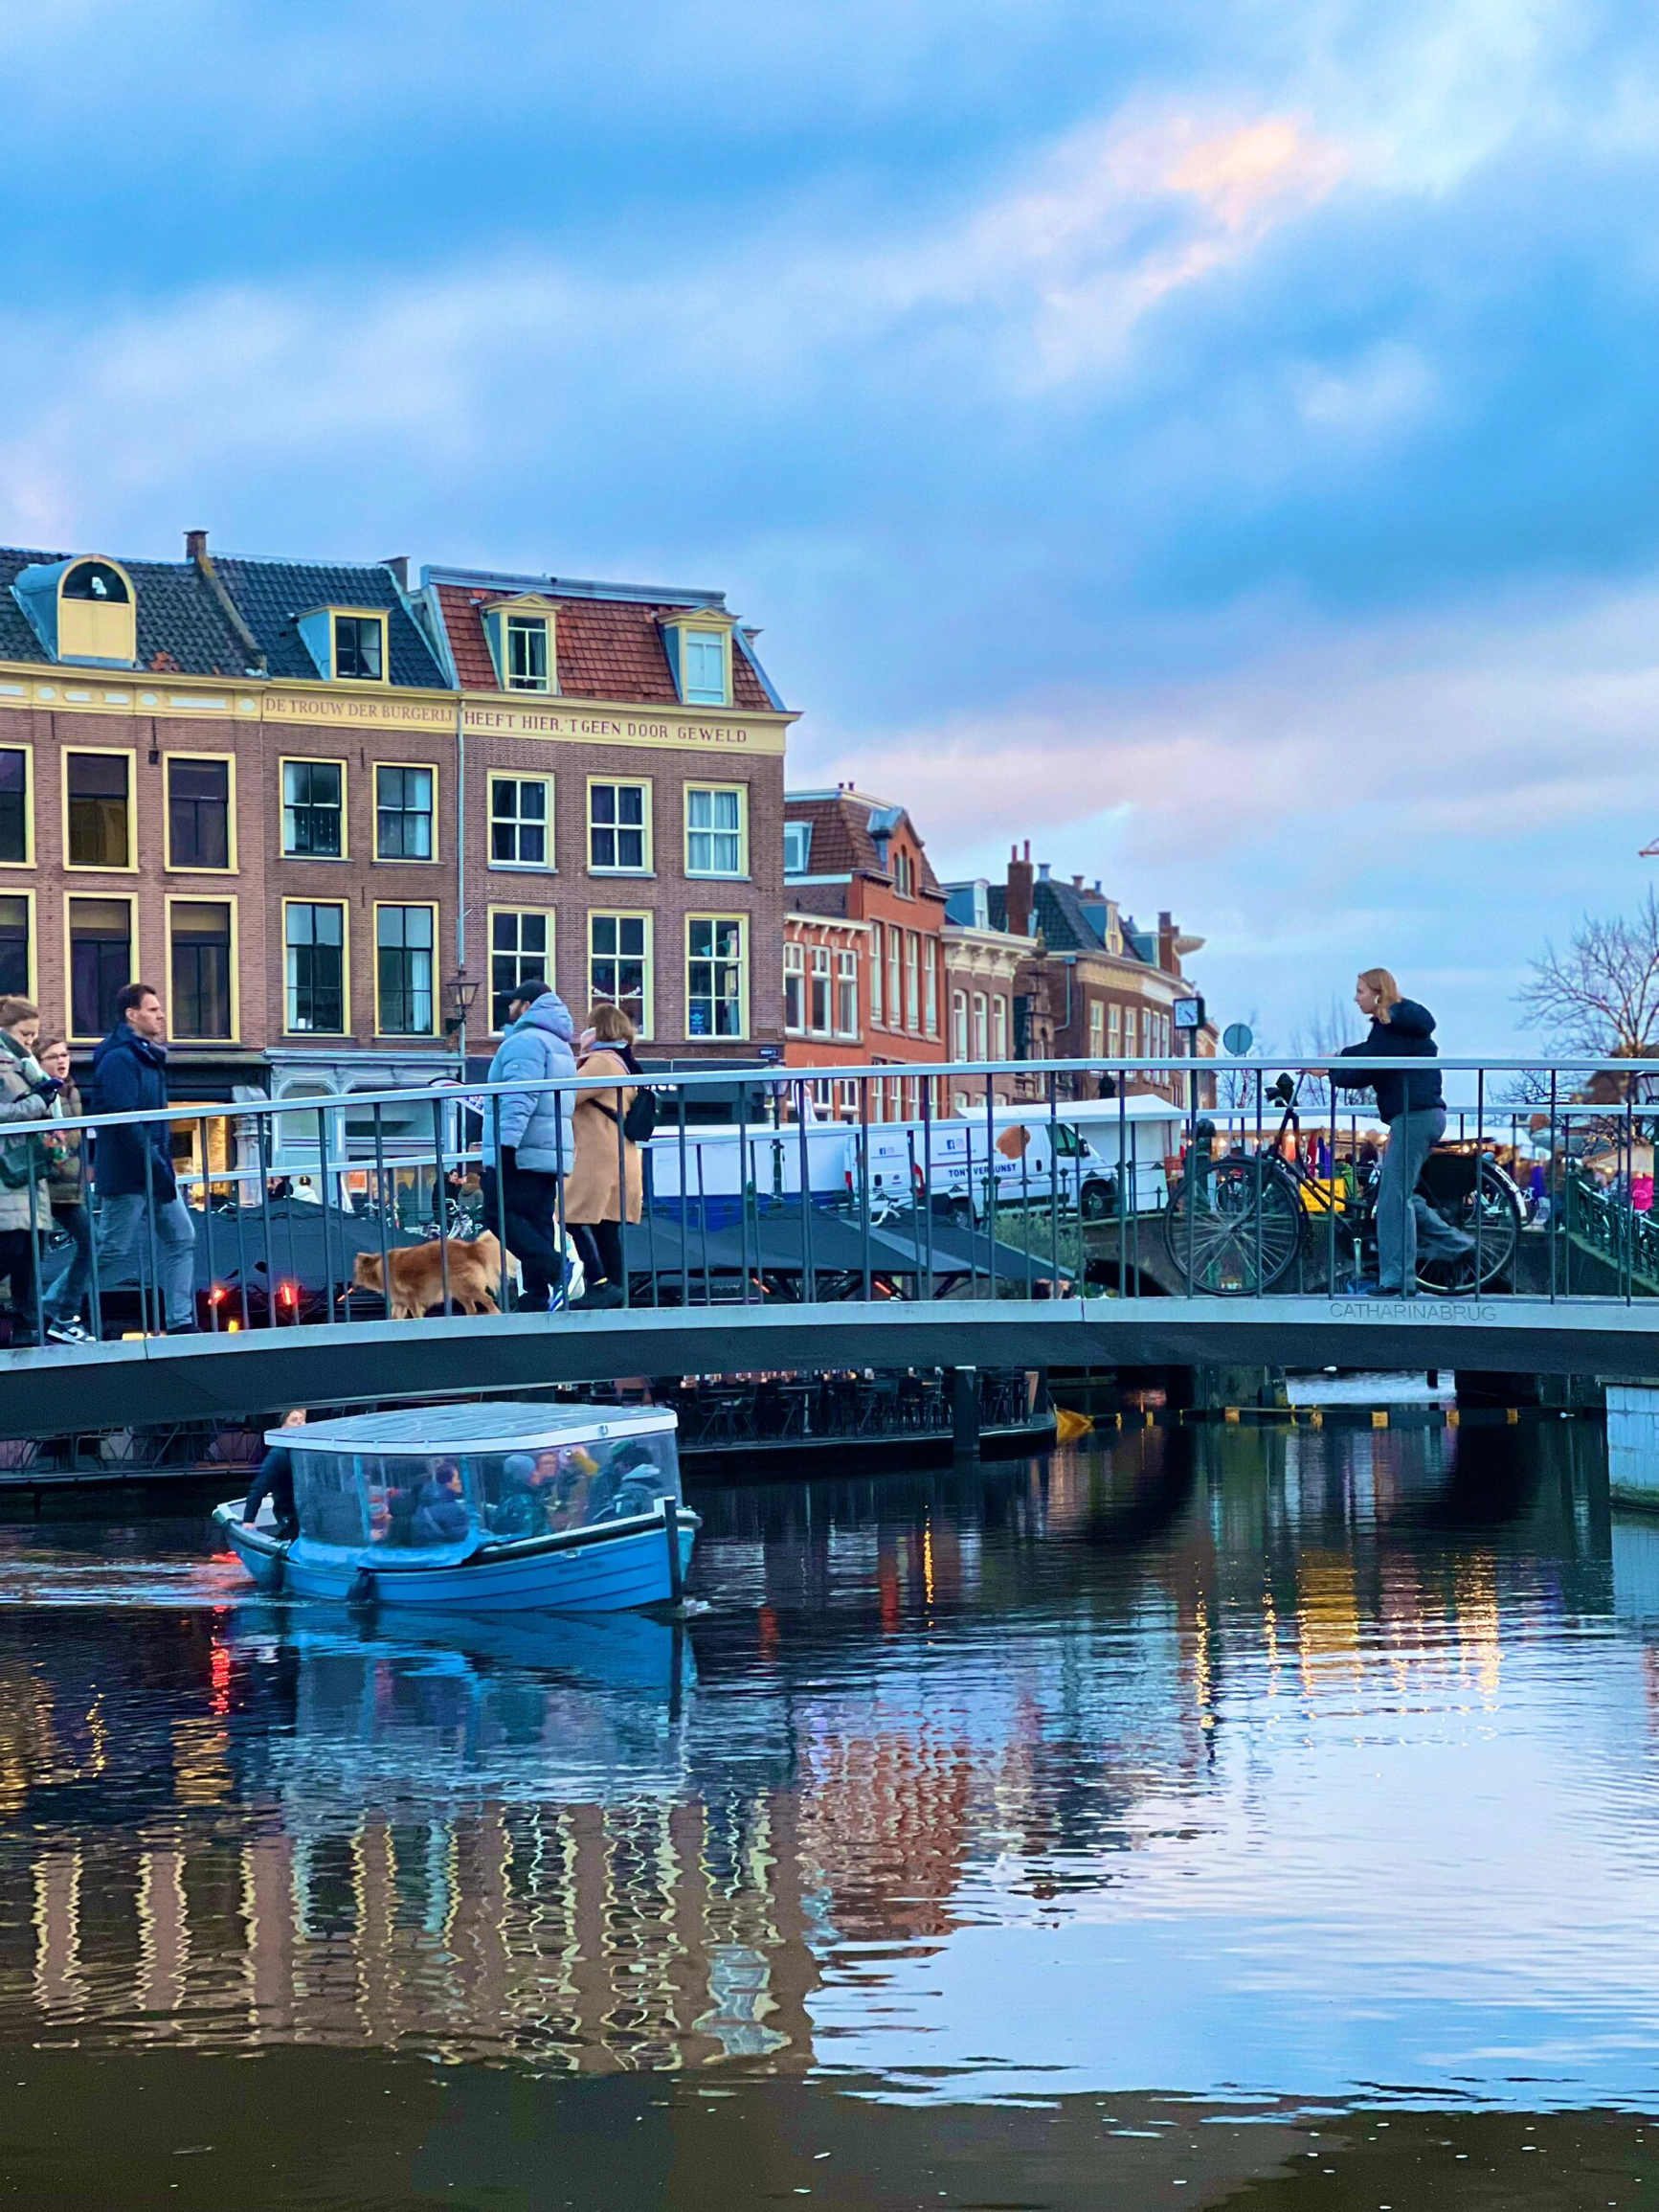 荷兰是一个充满魅力的国家，拥有[Tiptop]许多著名的景点和博物馆，其中包括阿姆斯特丹的水坝广场、